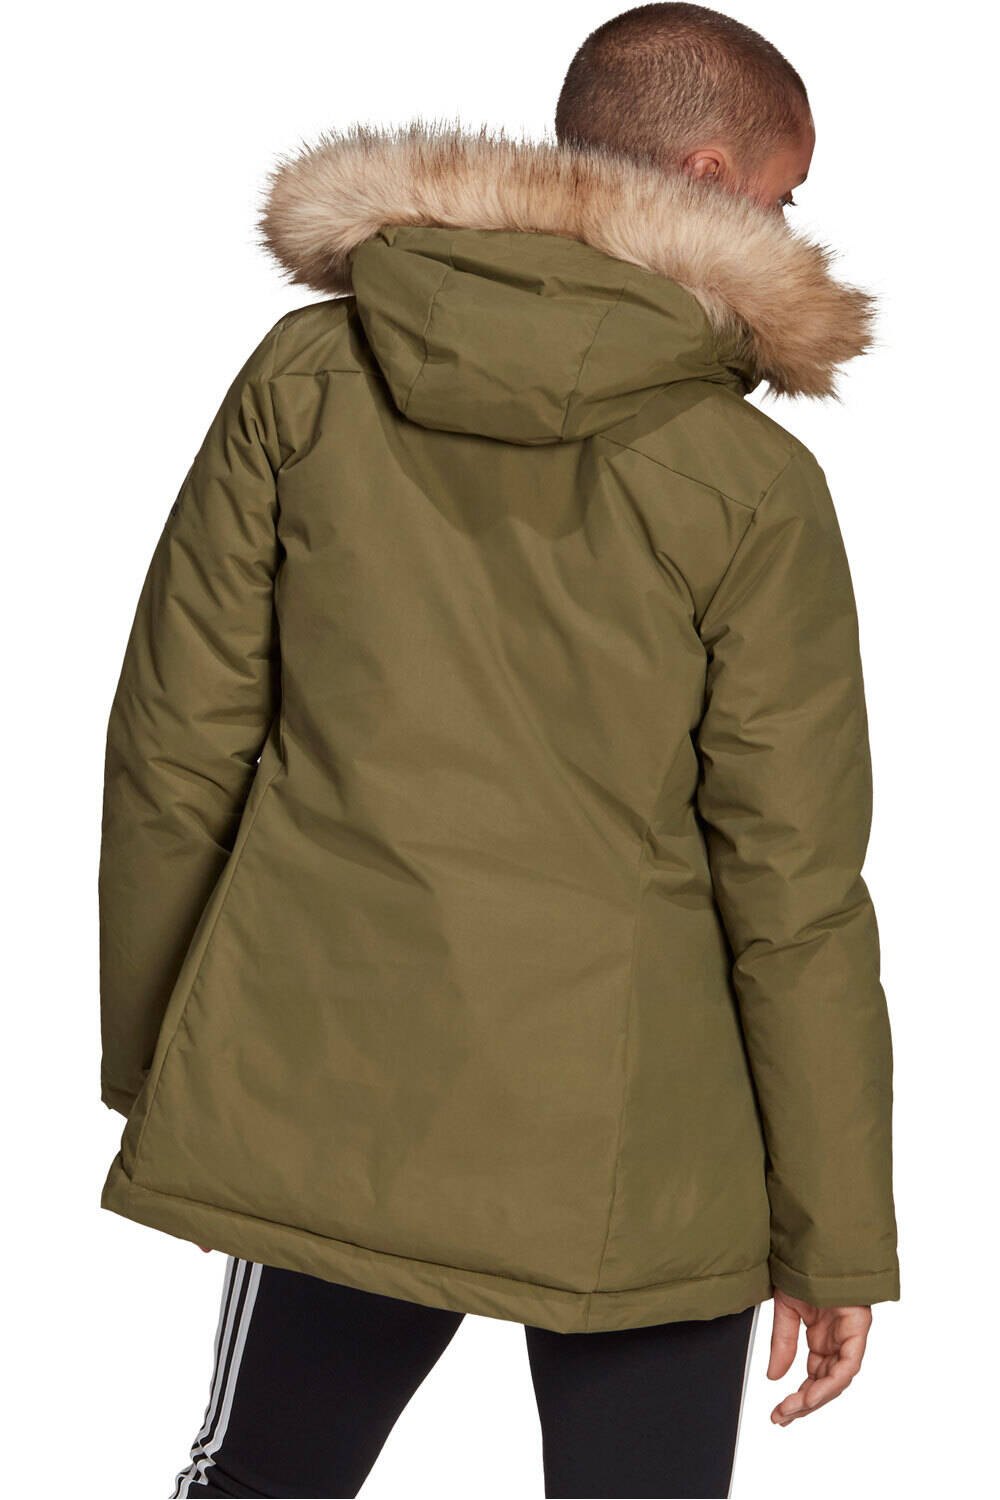 adidas chaquetas mujer Utilitas con capucha vista trasera